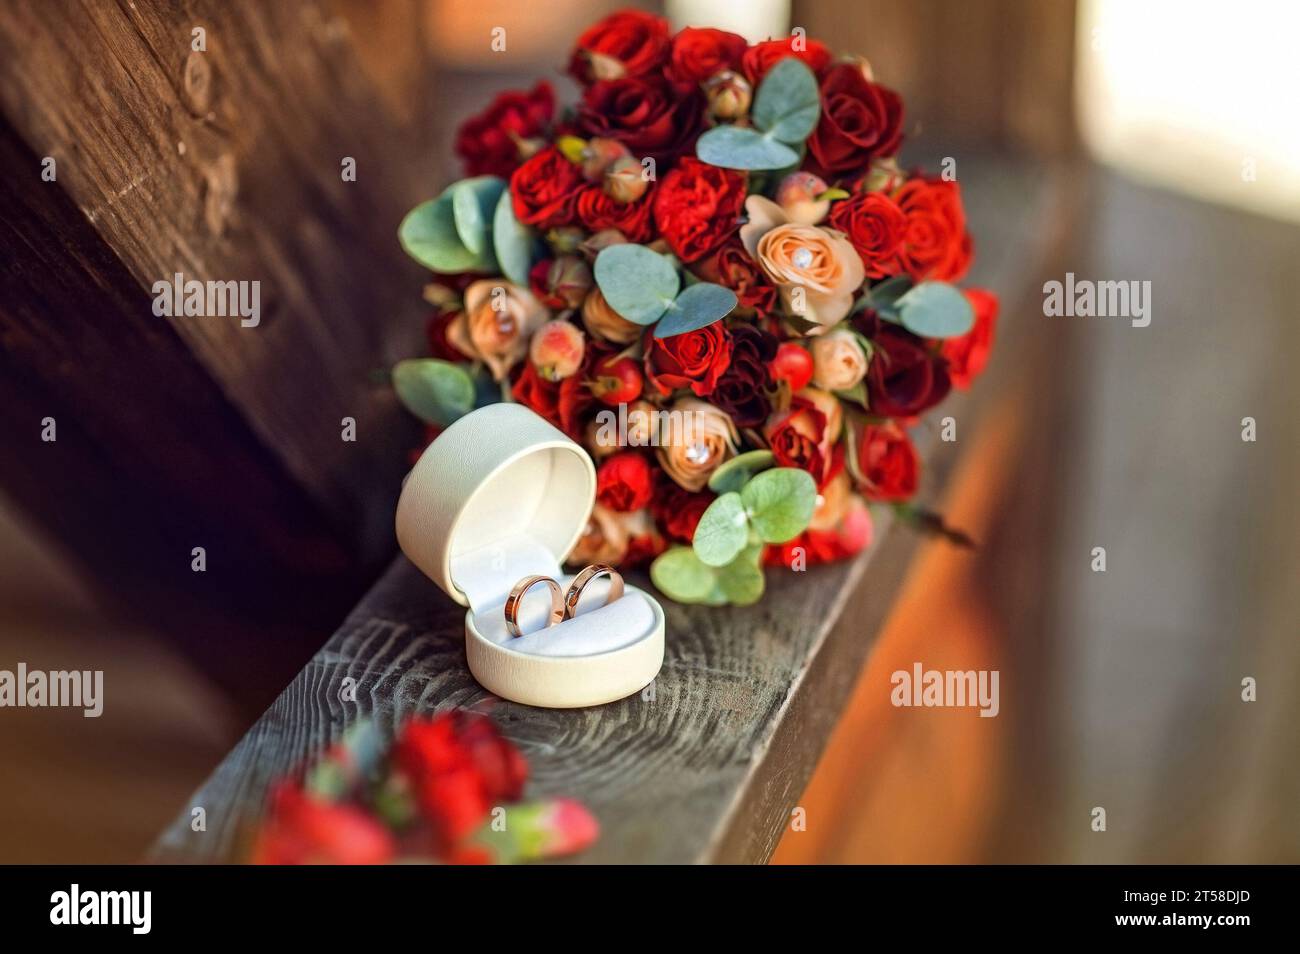 Fedi nuziali vicino al bouquet rosso con rose su sfondo di legno. Accessori nuziali. Il concetto di matrimonio in uno stile etnico nella natura Foto Stock